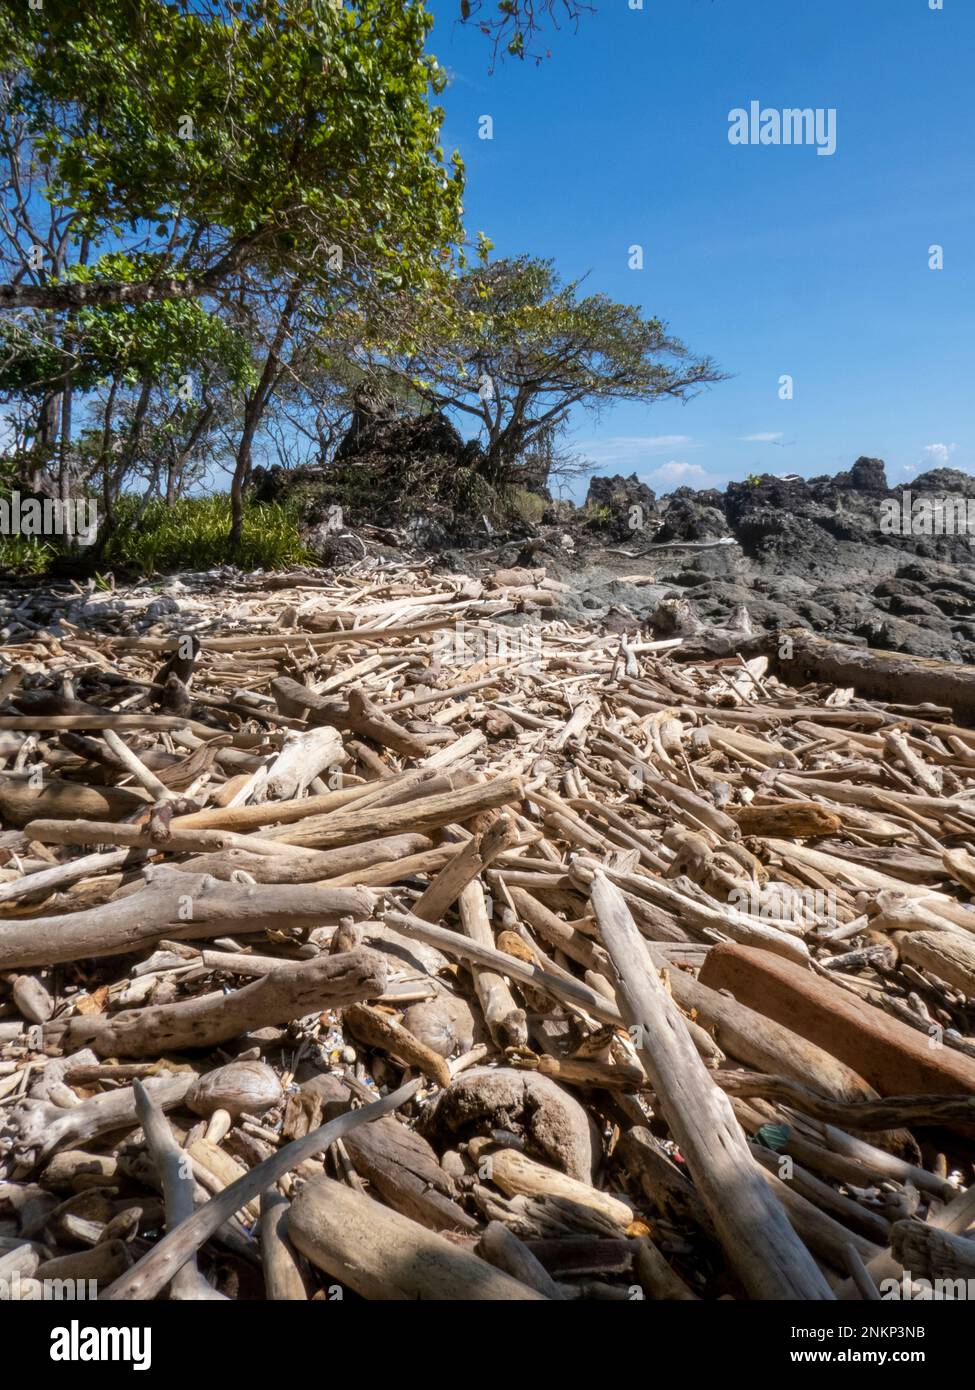 An der Küste in der Nähe von Montezuma in Costa Rica wurde viel trockenes Treibholz angespült Stockfoto